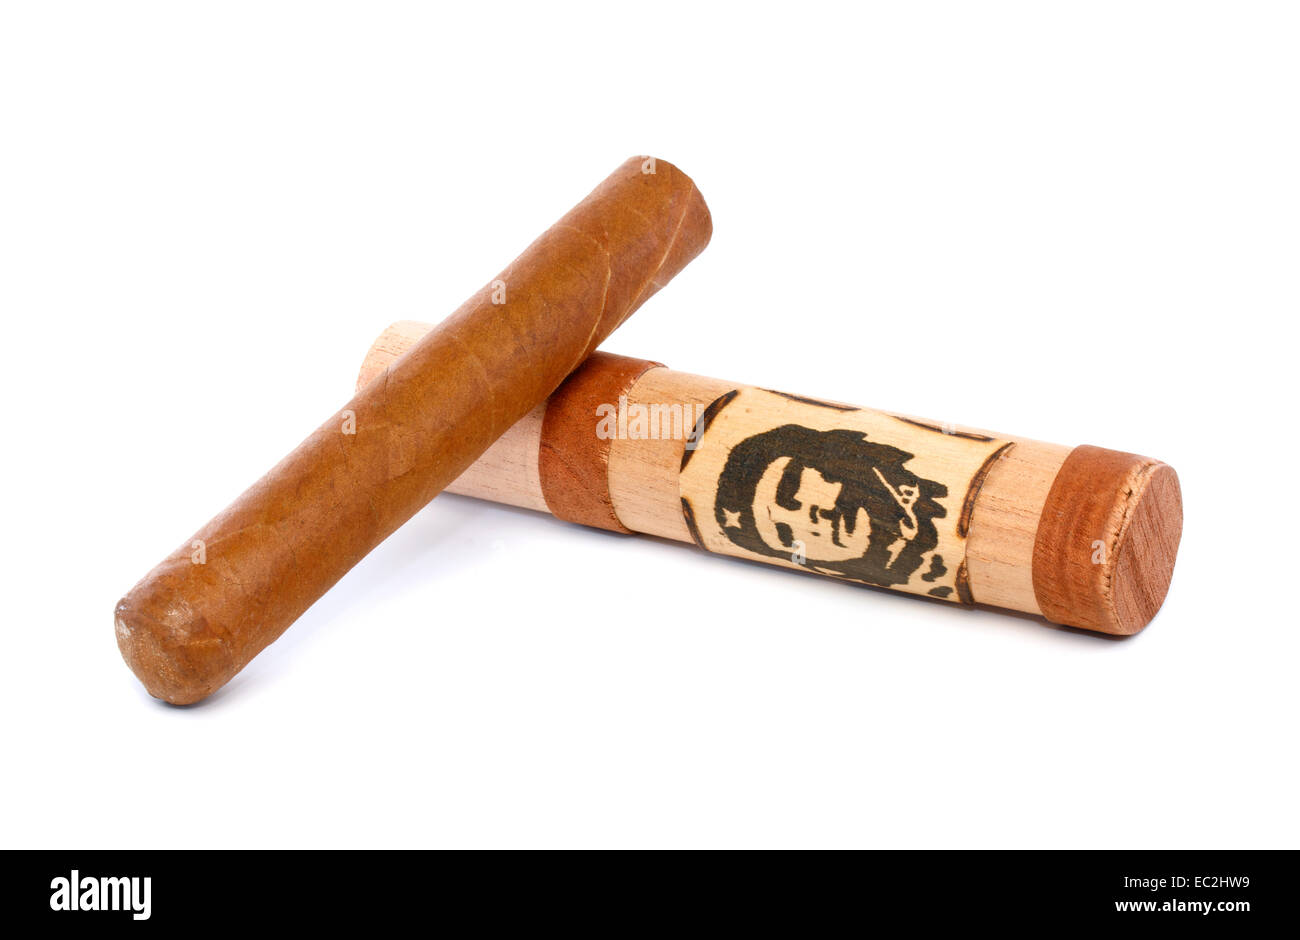 [Solo uso editoriale] sigaro cubano e portasigari con immagine di Ernesto Che Guevara, isolato su bianco Foto Stock